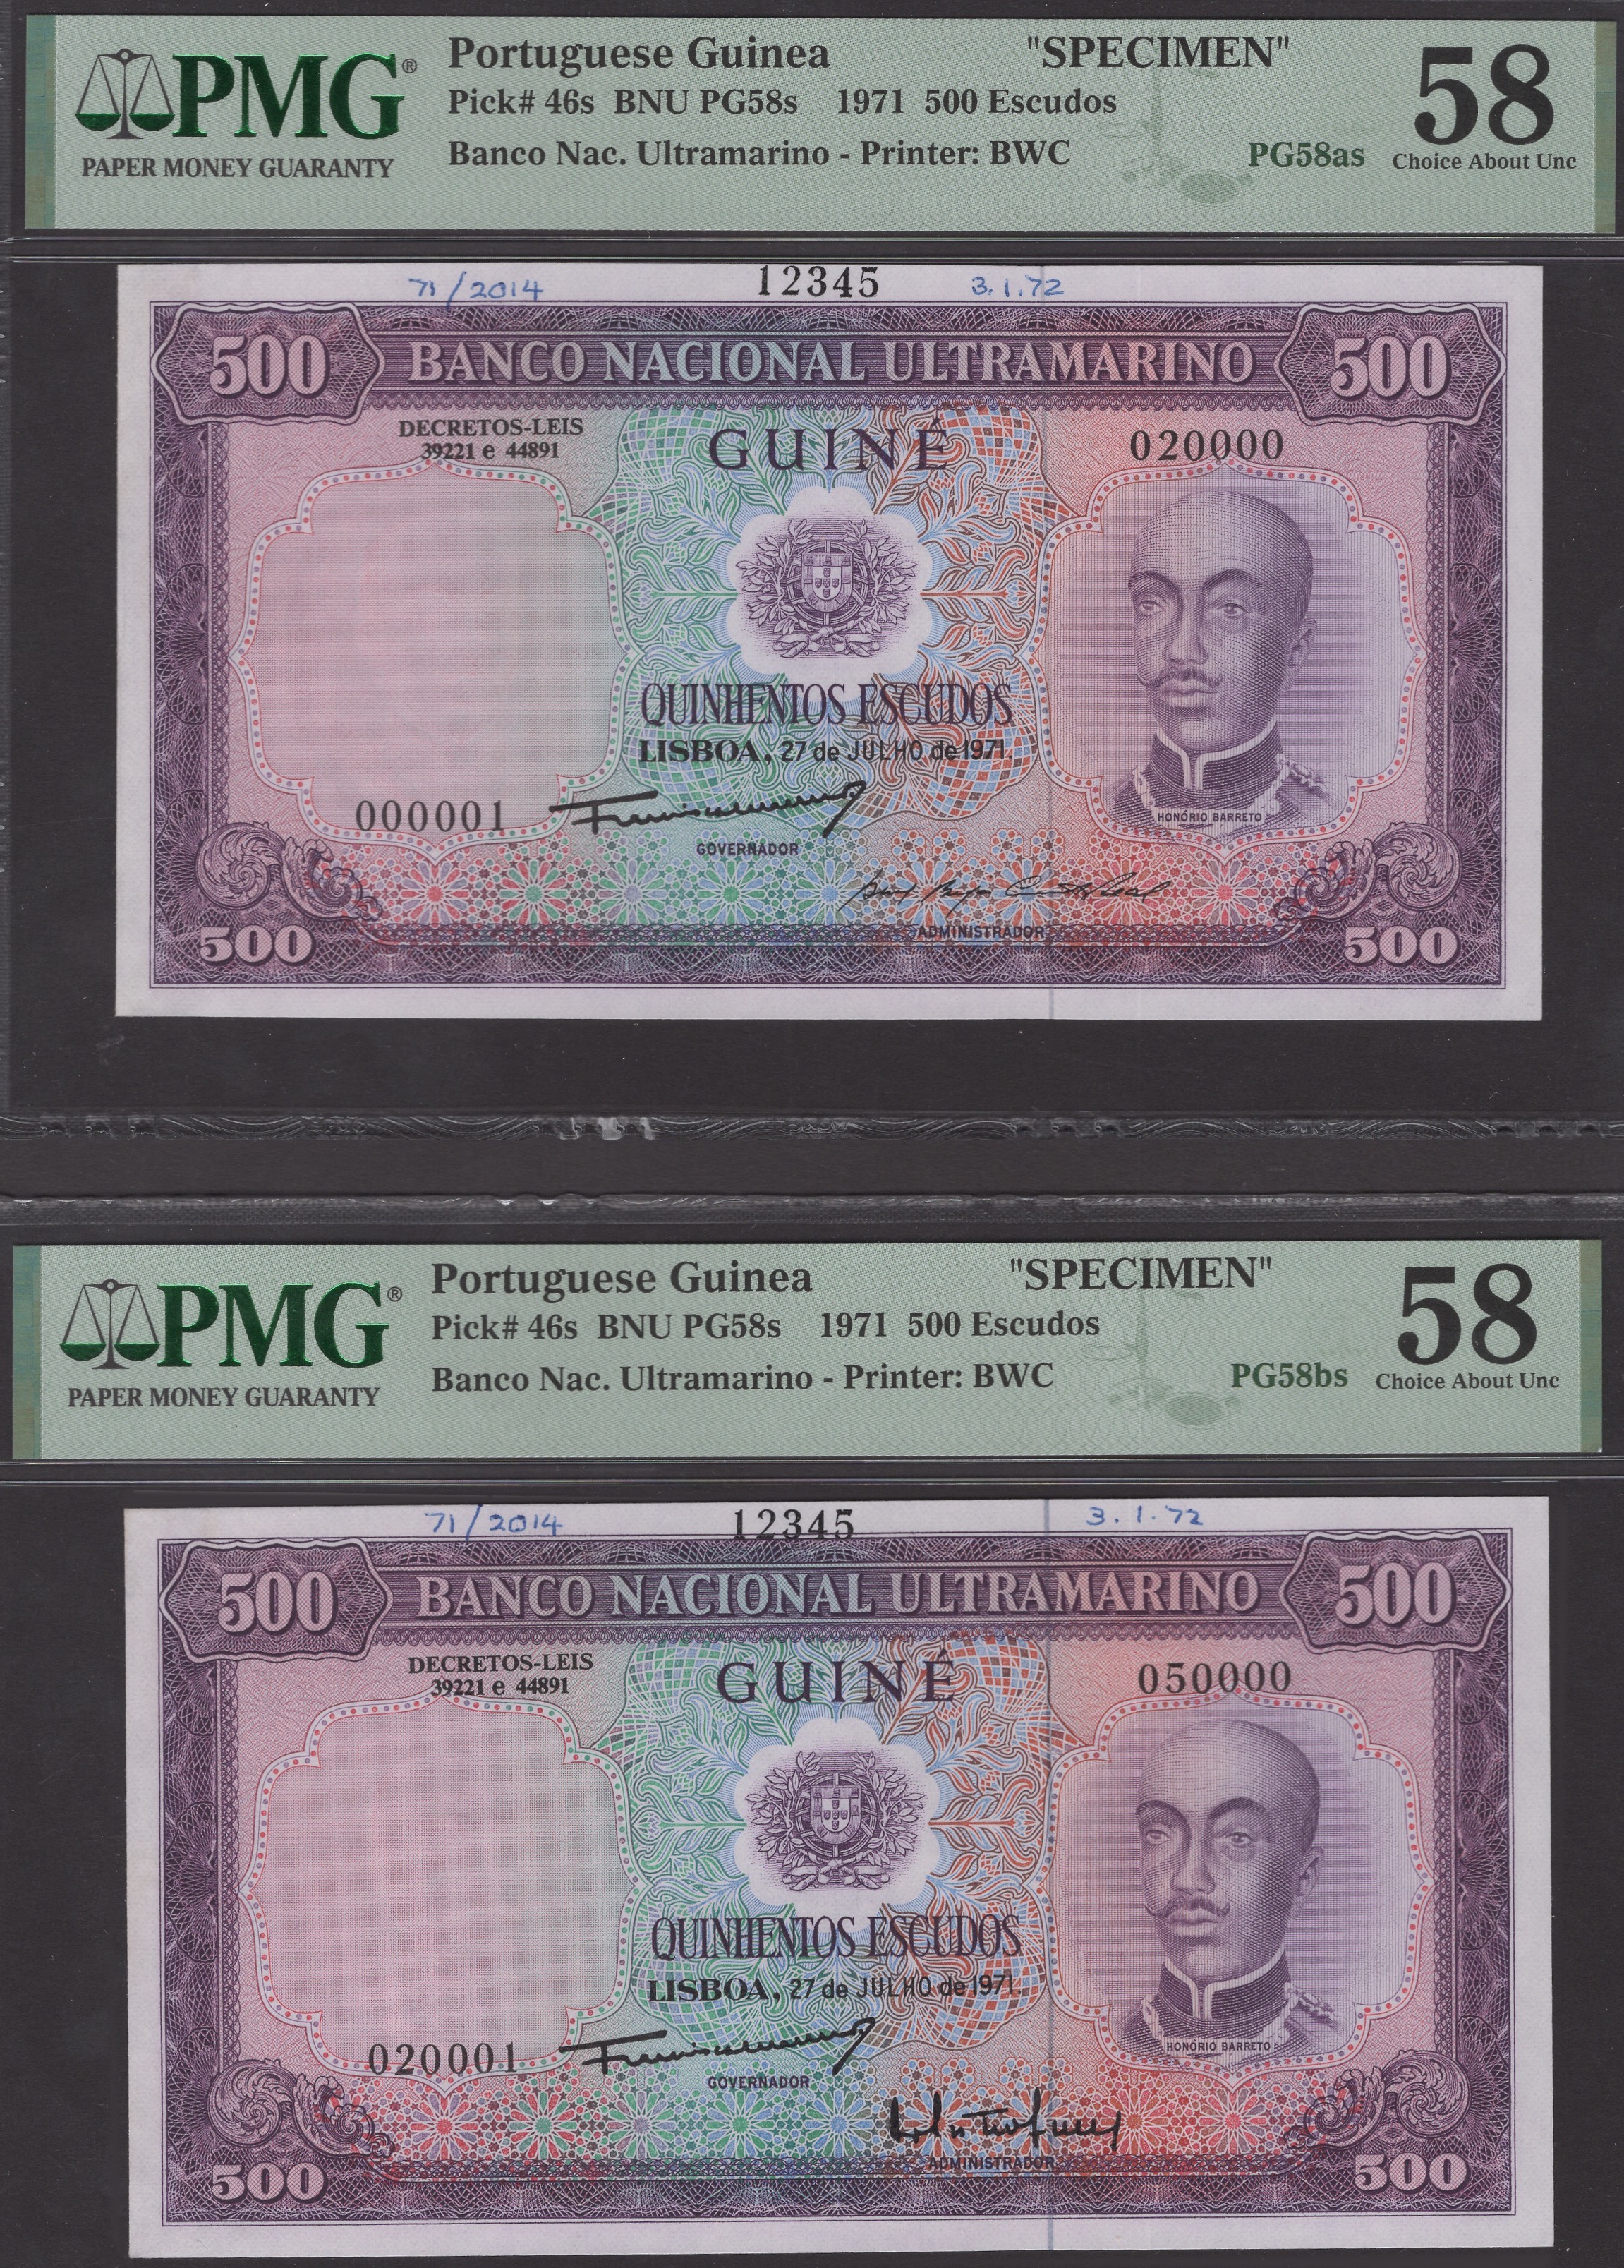 Banco Nacional Ultramarino, Portuguese Guinea, printers archival specimens for 500 Escudos...